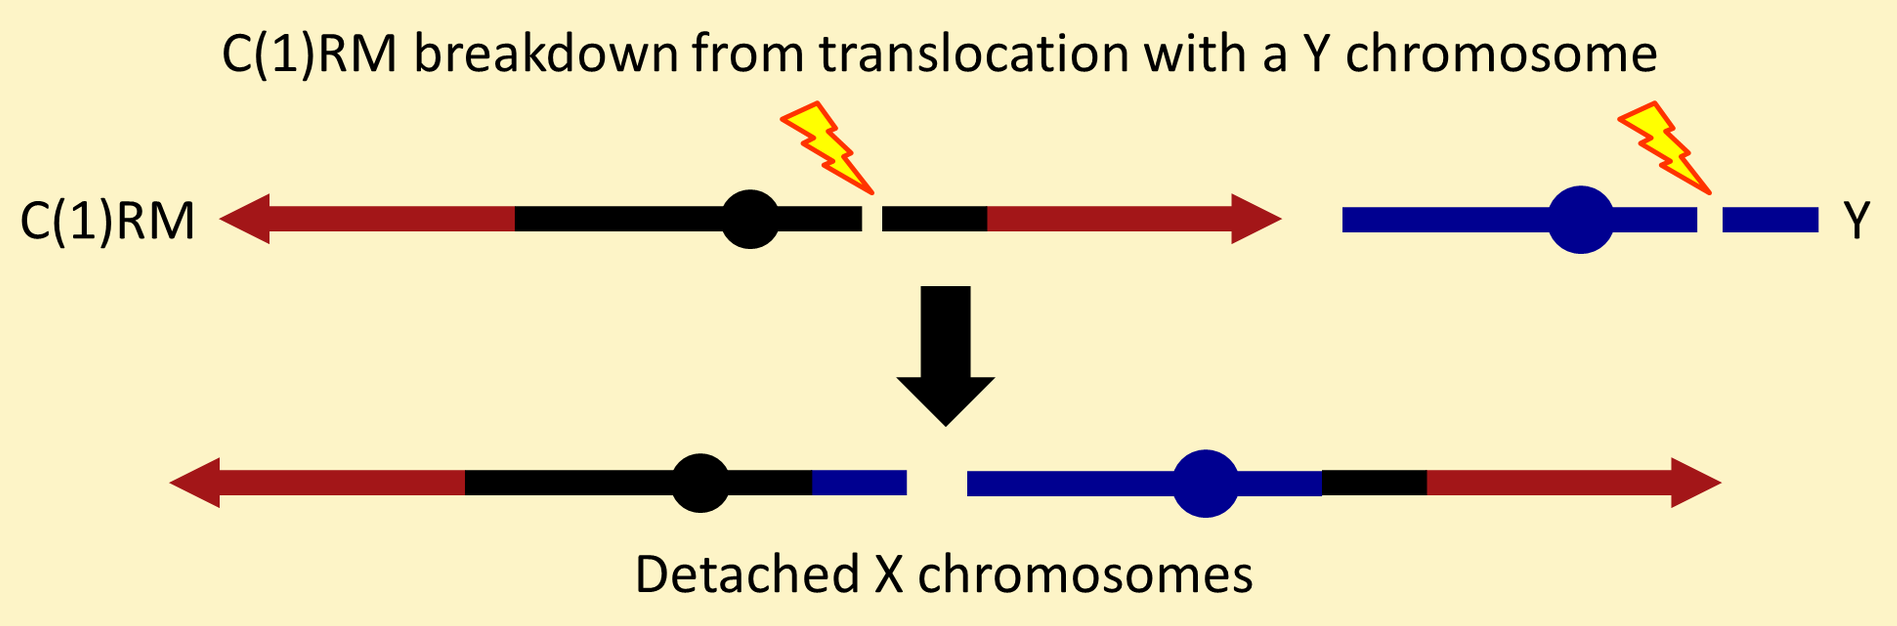 Detached X chromosomes